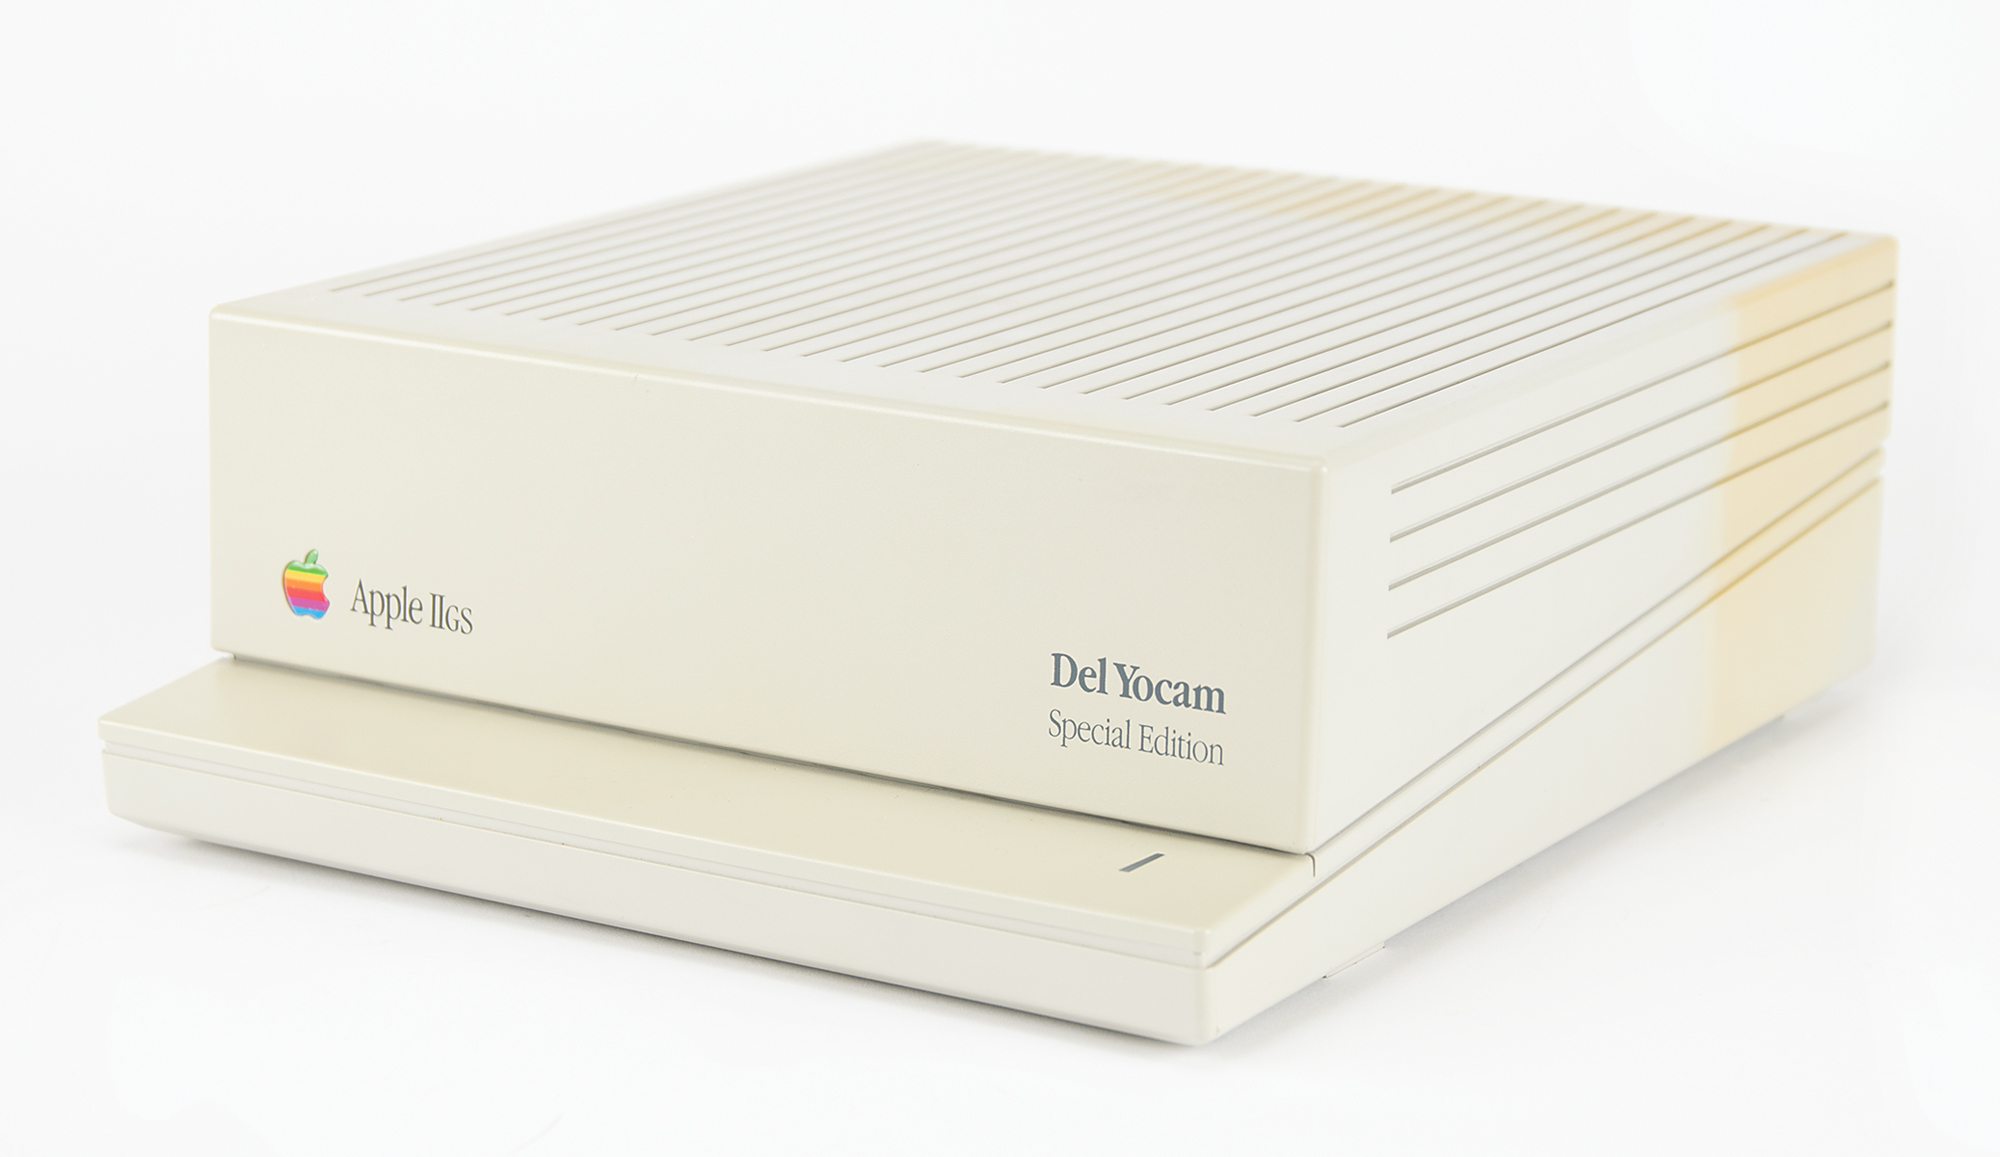 Lot #8016 Del Yocam's Special Edition Apple IIGS with Original Box